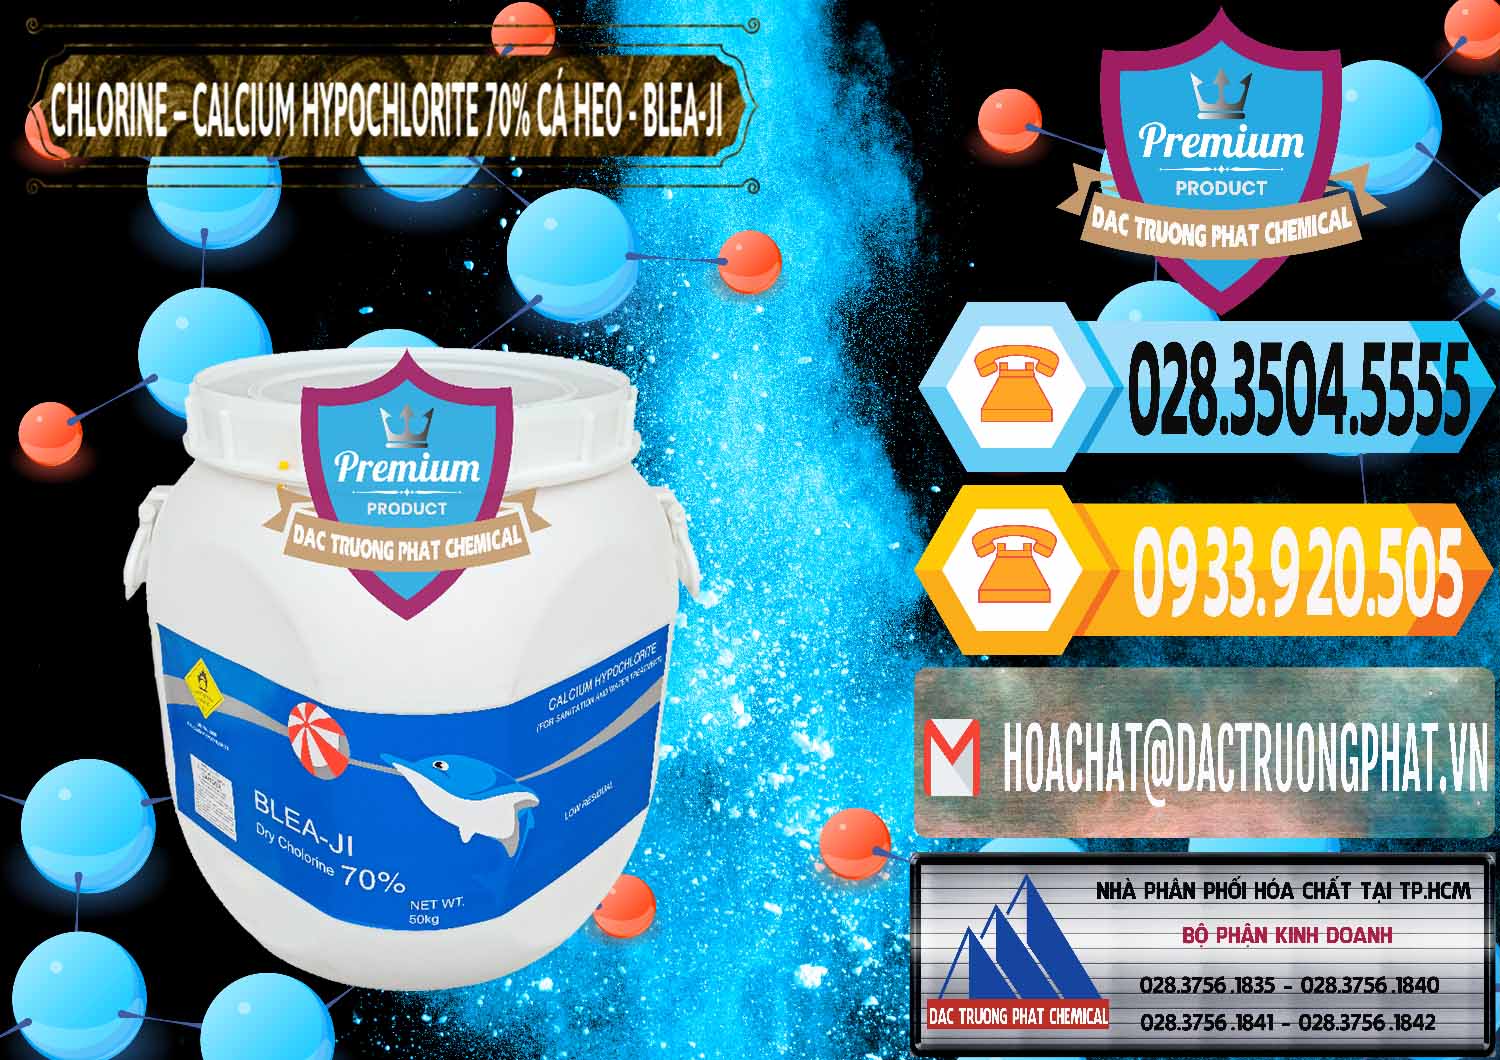 Nơi chuyên bán _ cung ứng Clorin - Chlorine Cá Heo 70% Blea-Ji Trung Quốc China - 0056 - Chuyên cung cấp - phân phối hóa chất tại TP.HCM - hoachattayrua.net